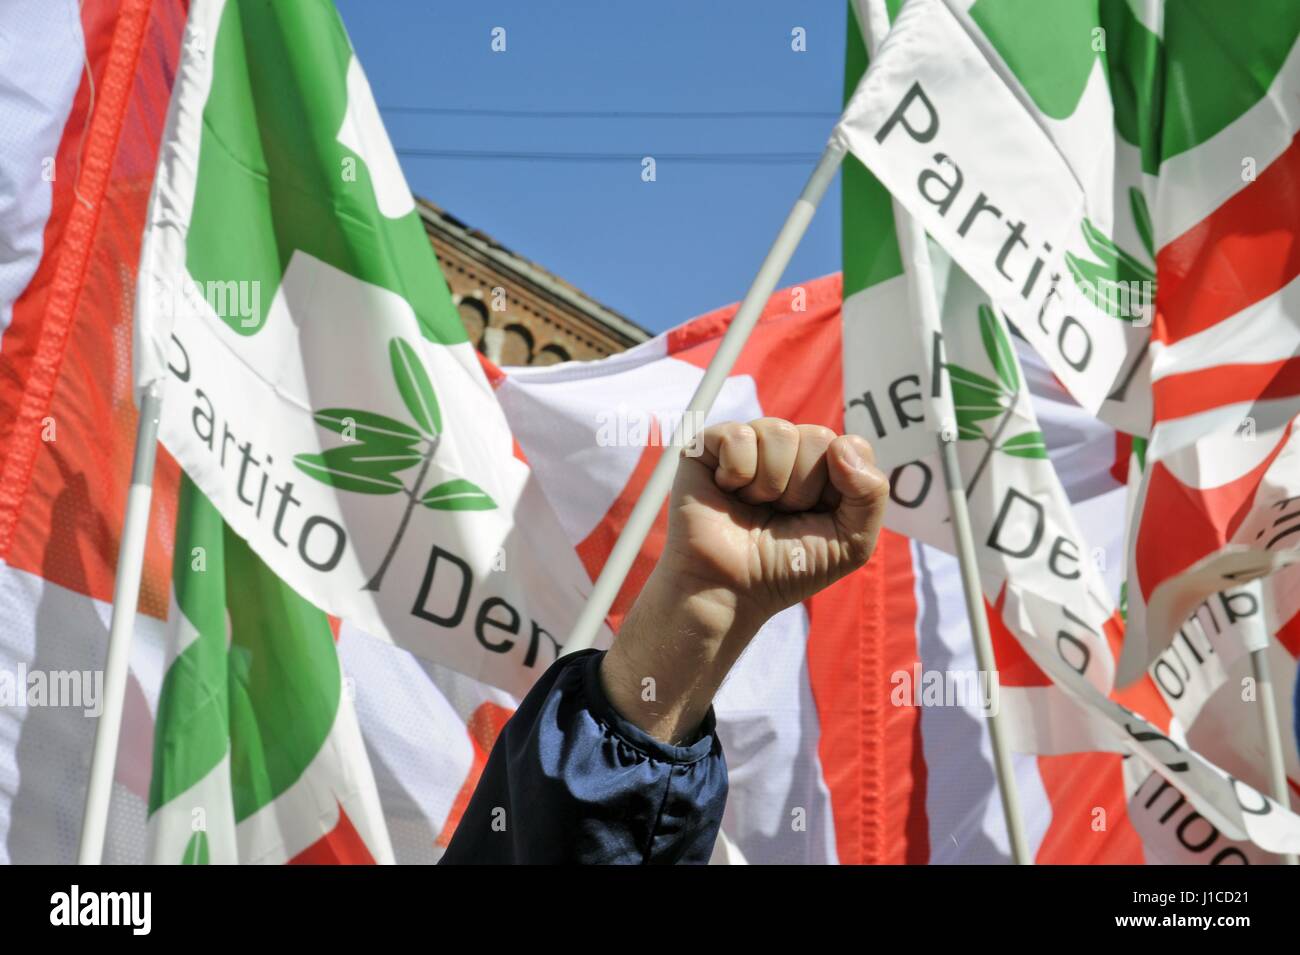 Am 25. April wird jährlich in ganz Italien mit festen und Demonstrationen zu erinnern, die Befreiung vom Nazi-Faschismus gefeiert. Stockfoto